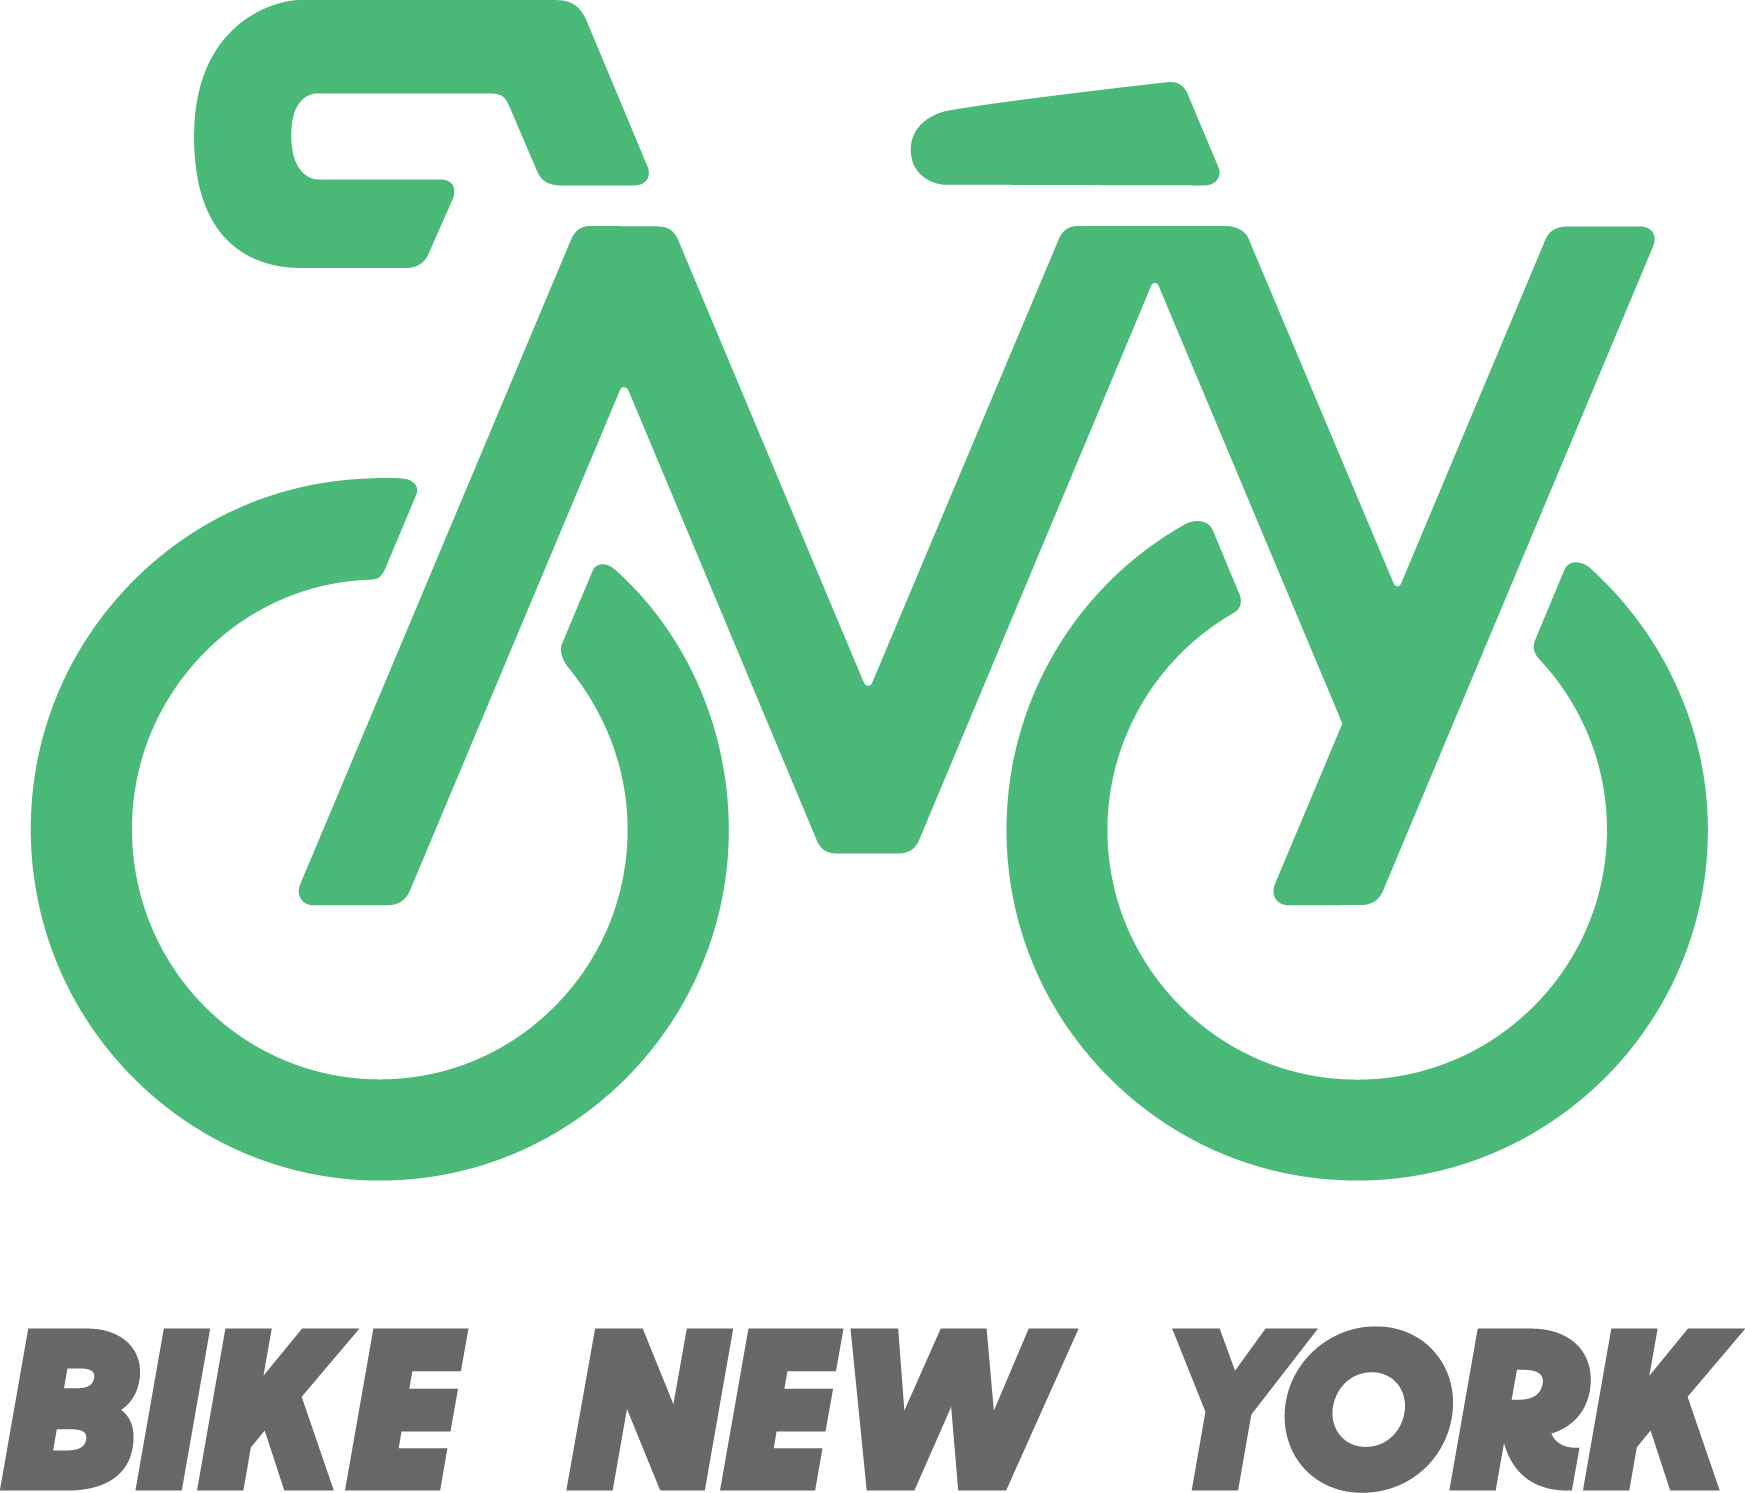 I have a new bike. Велосипед лого. Вело эмблема. Вело логотип. Фирменные эмблемы на велосипедах.